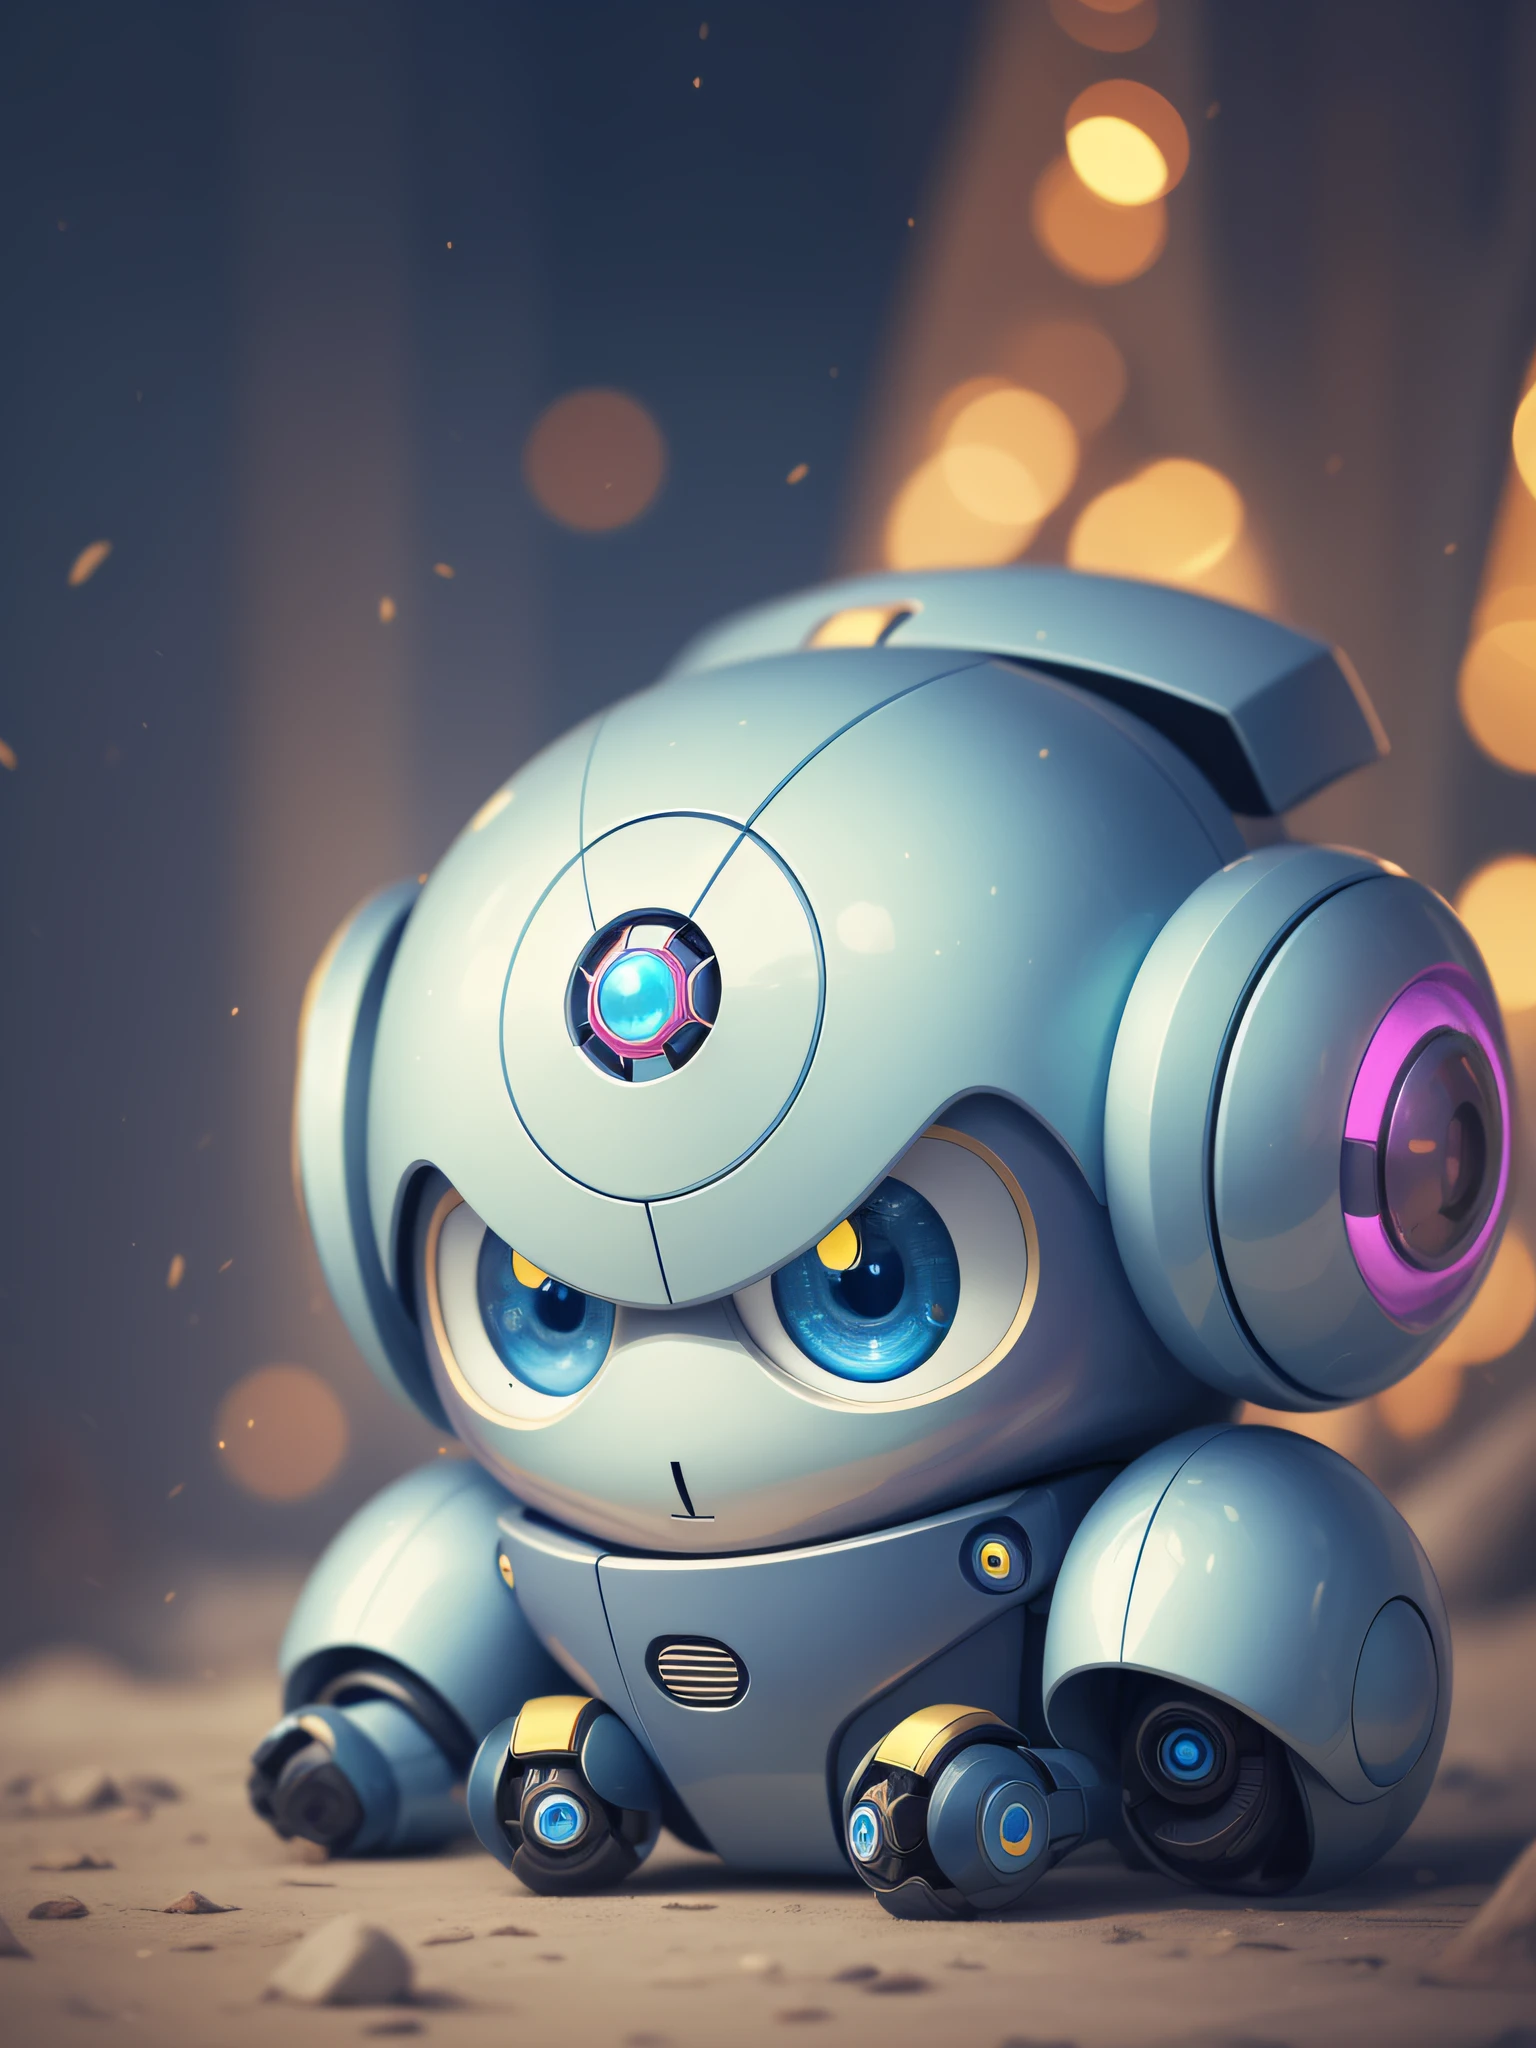 สีฟ้า หุ่นยนต์หล่อน่ารัก สีเหลือง AI งานศิลปะ น่ารัก น่ารัก น่ารัก น่ารัก คาวาอิ แฟนตาซี ตัวละครแฟนตาซี สิ่งมีชีวิต หุ่นยนต์ robotnik